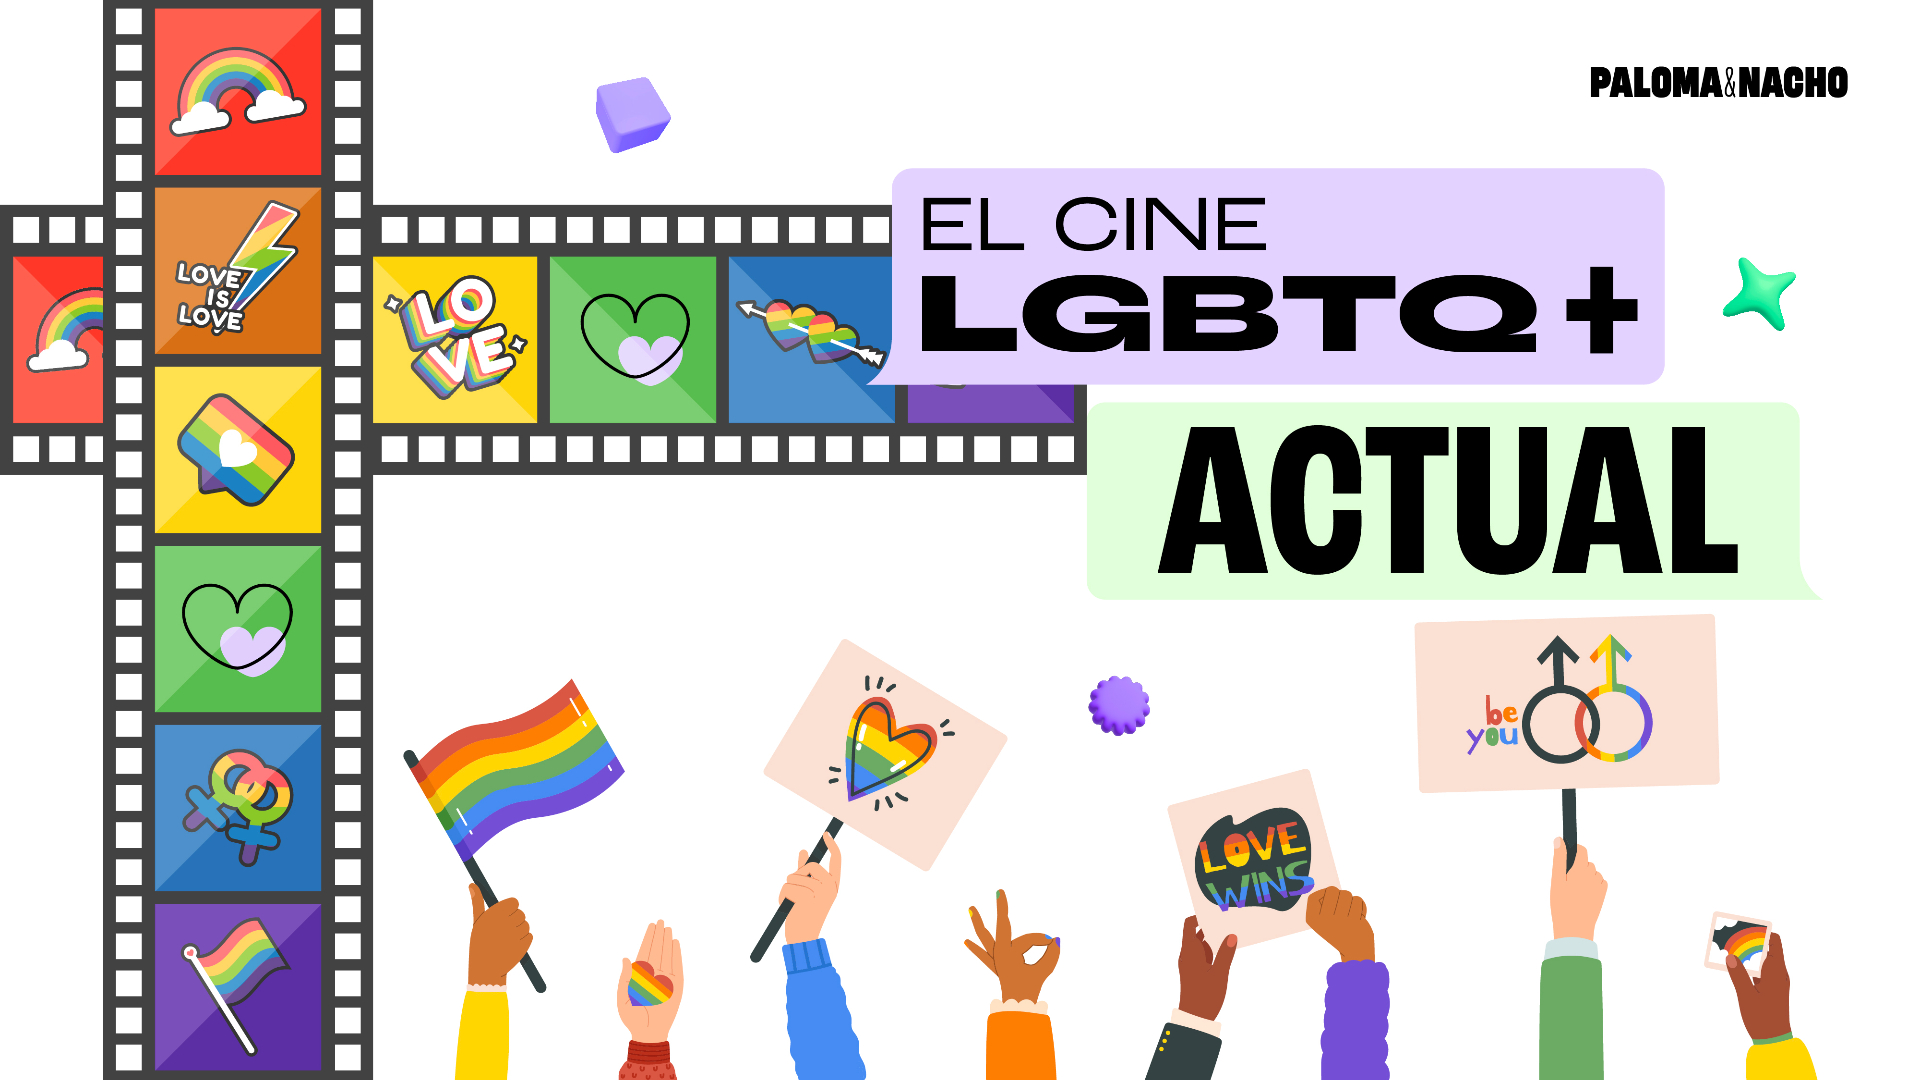 El cine LGBTQ+ actual